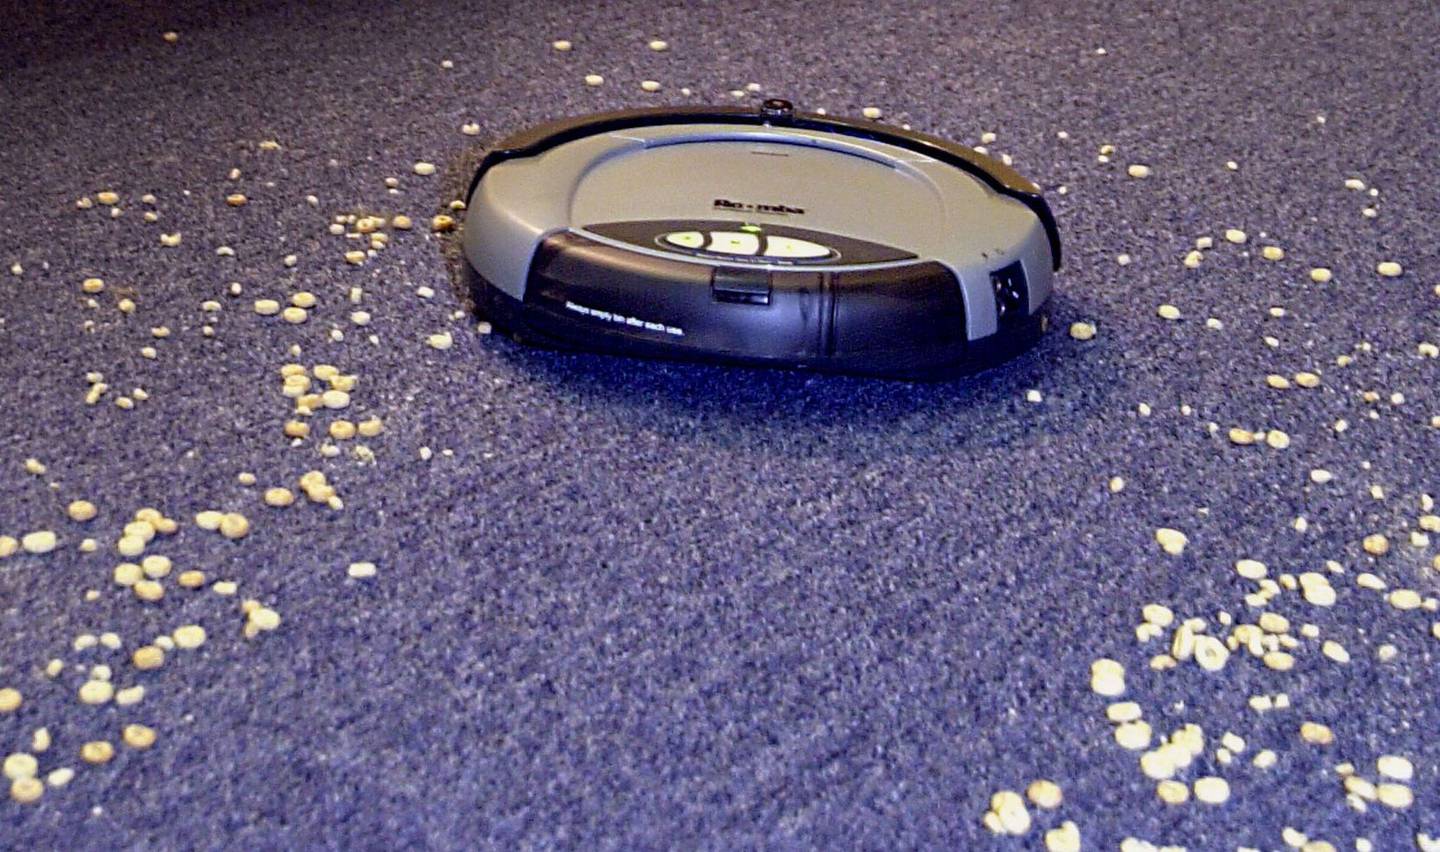 Robô aspirador Roomba, da iRobot, será adquirida pela Amazon por US$ 1,65 bilhão; febre de vendas na pandemia